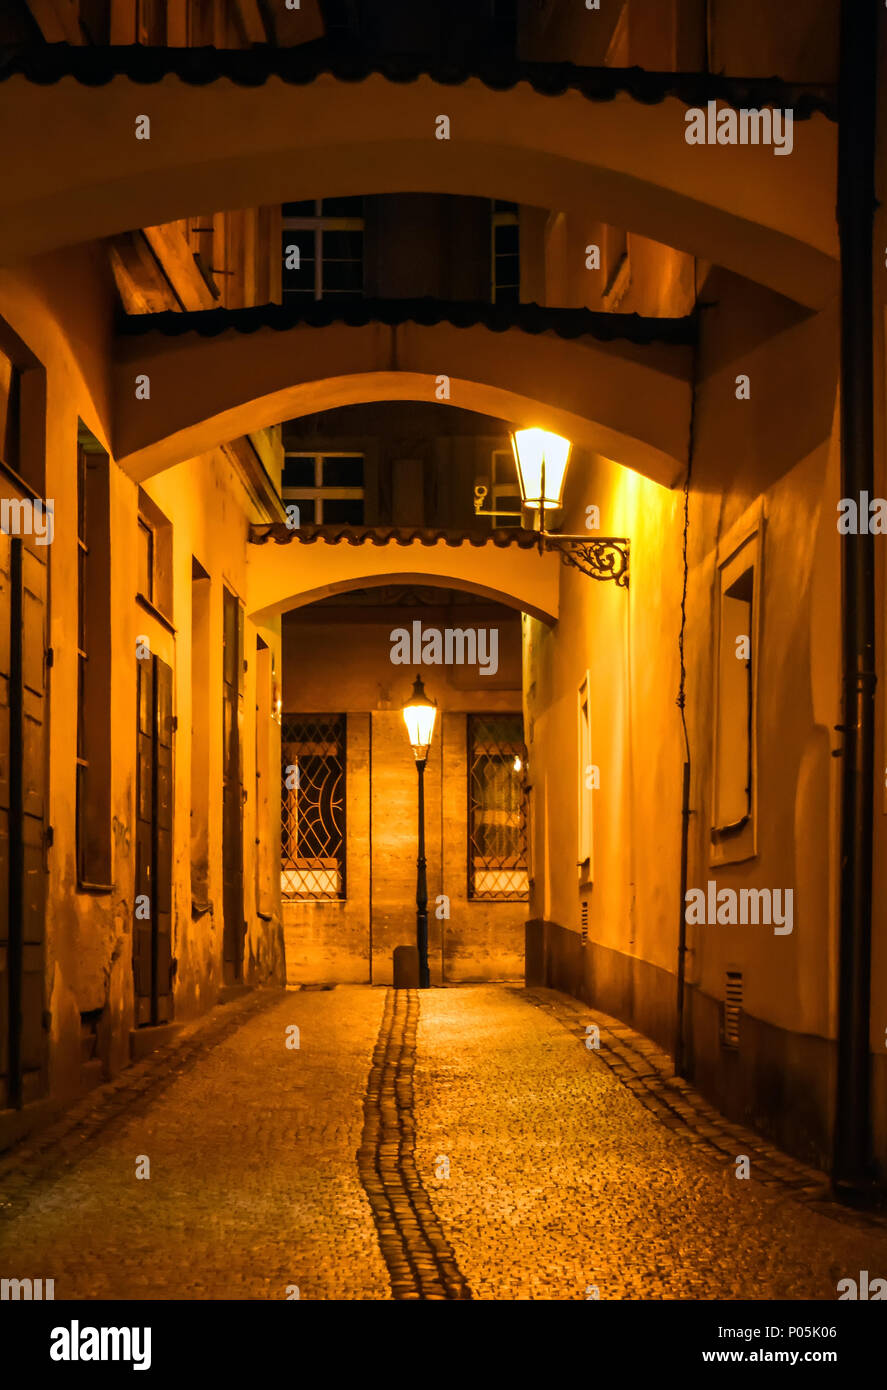 Belle vieille rue à arcades à Prague, République tchèque tirer dans la nuit avec l'ancienne lampe retro afar rougeoyant Banque D'Images